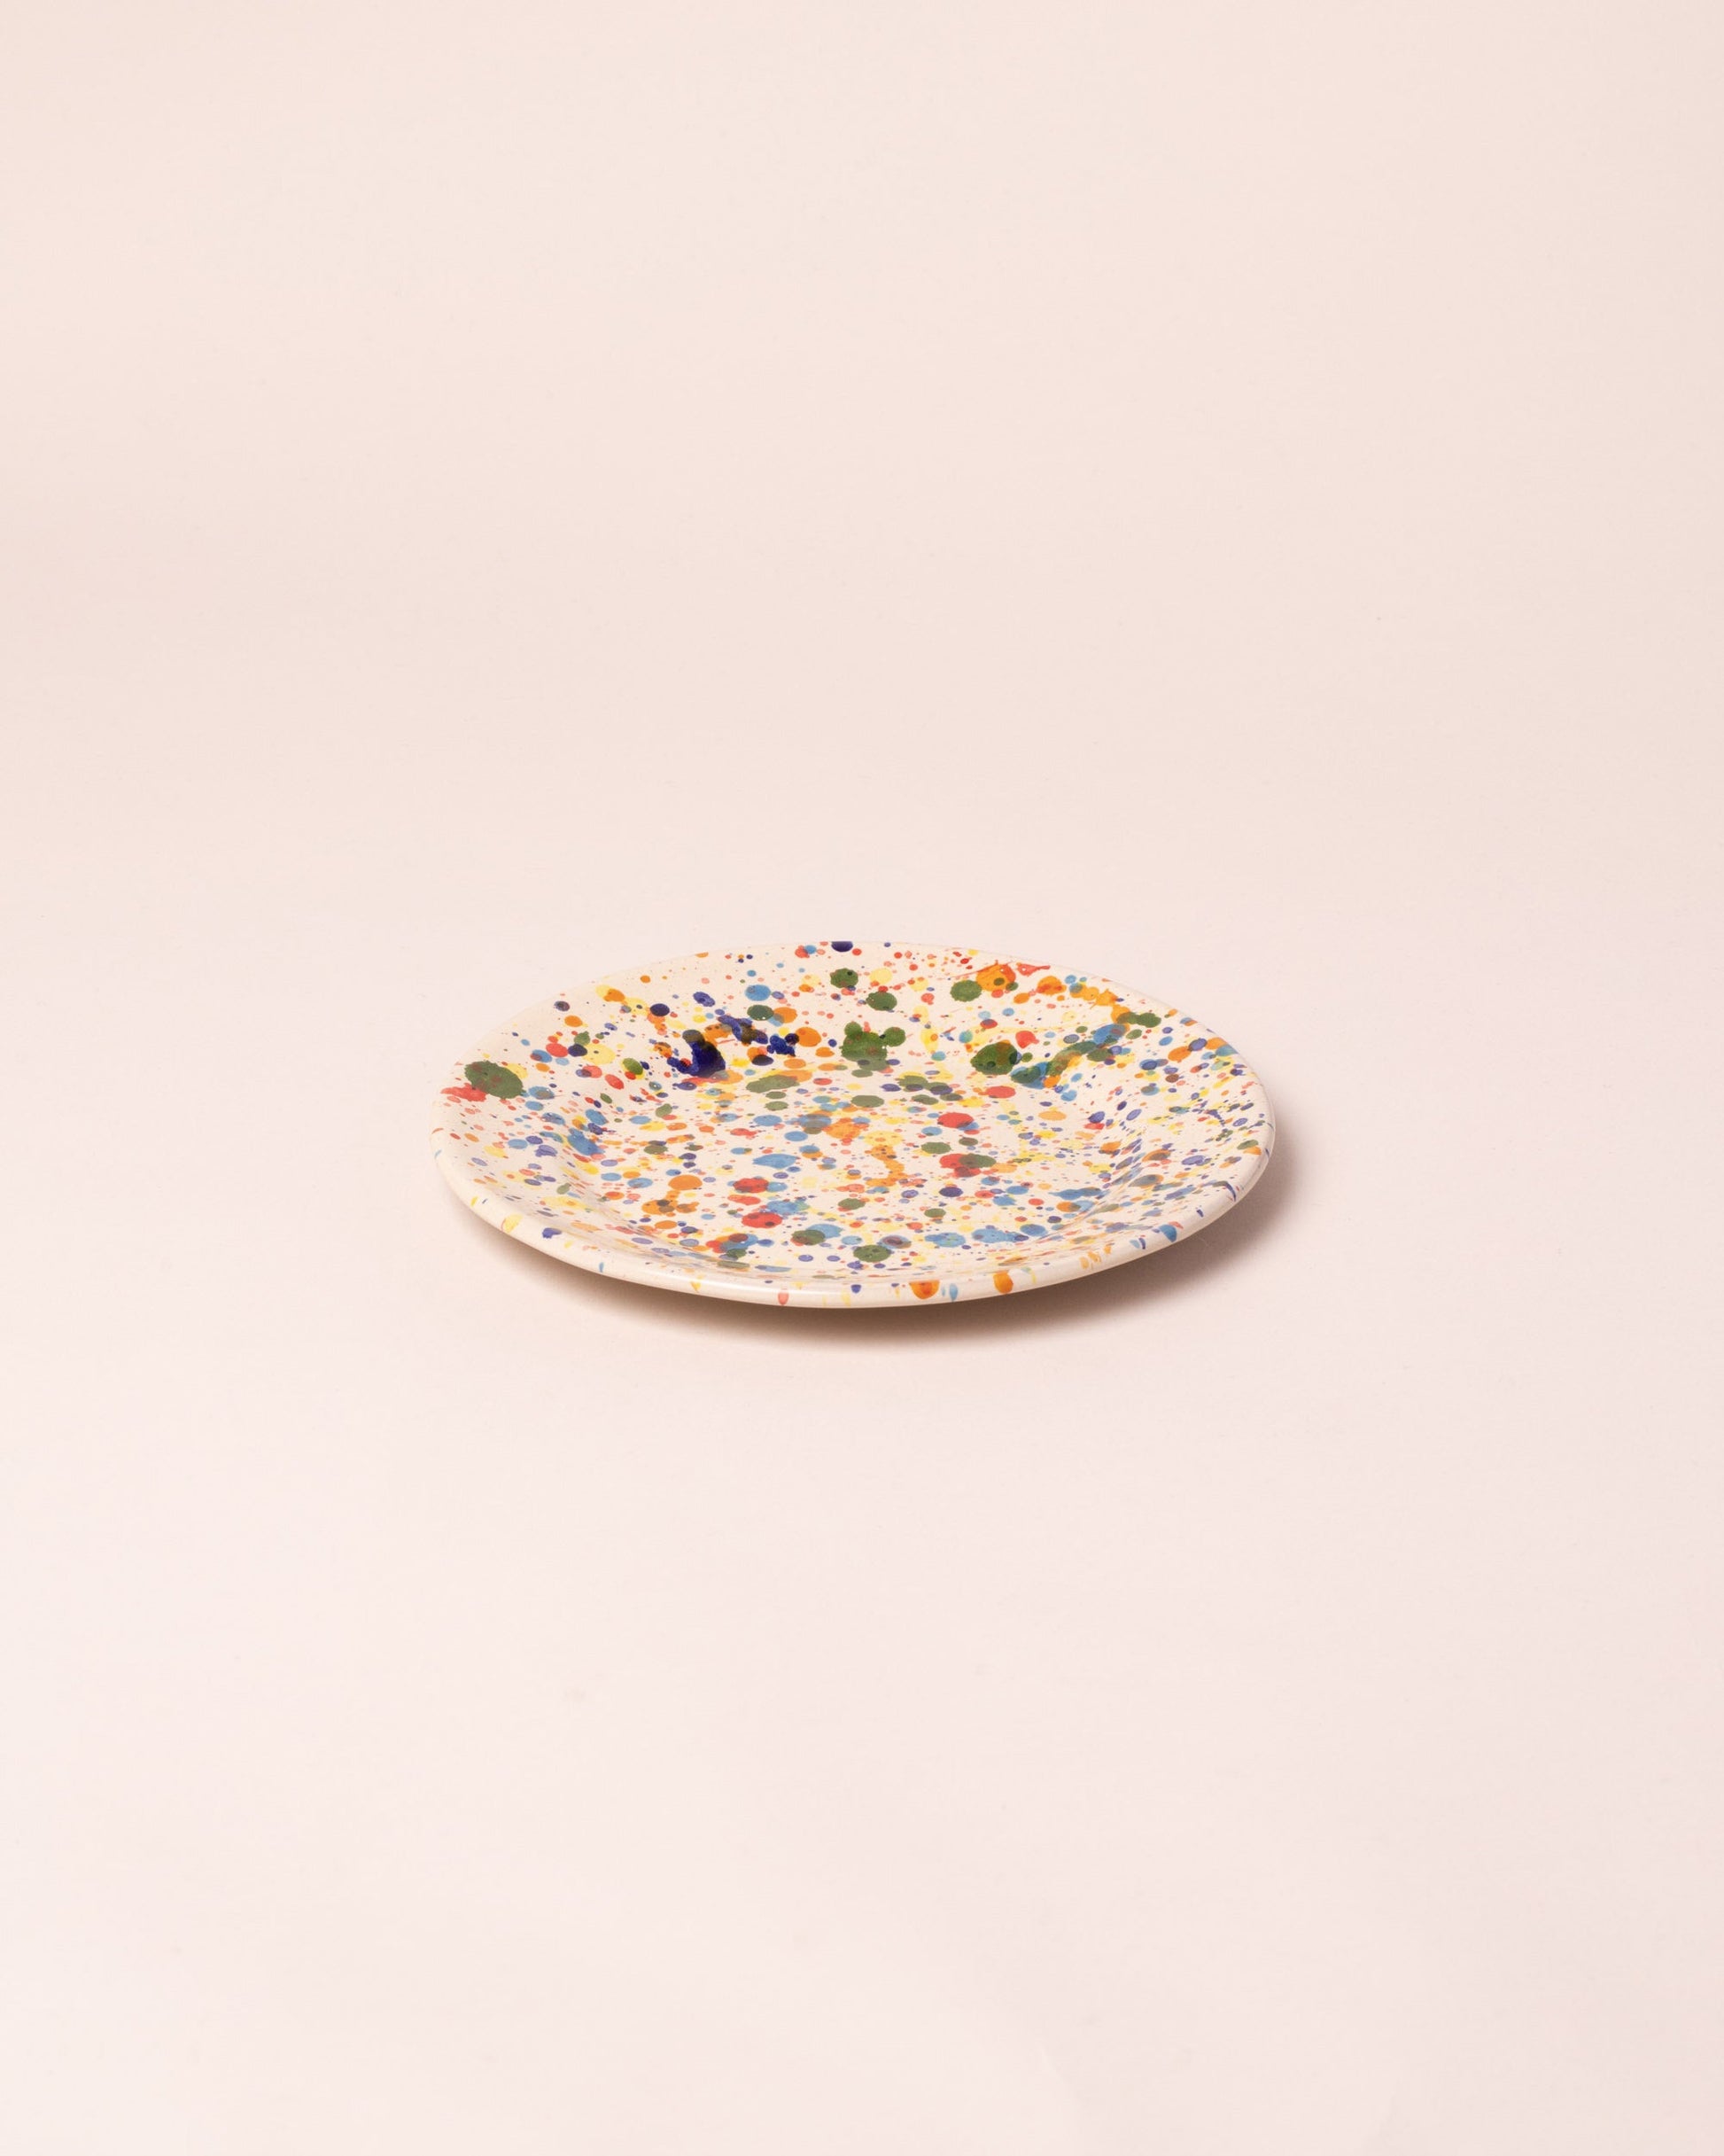 La Ceramica Vincenzo Del Monaco Colored Drops Dessert Dish on light color background.